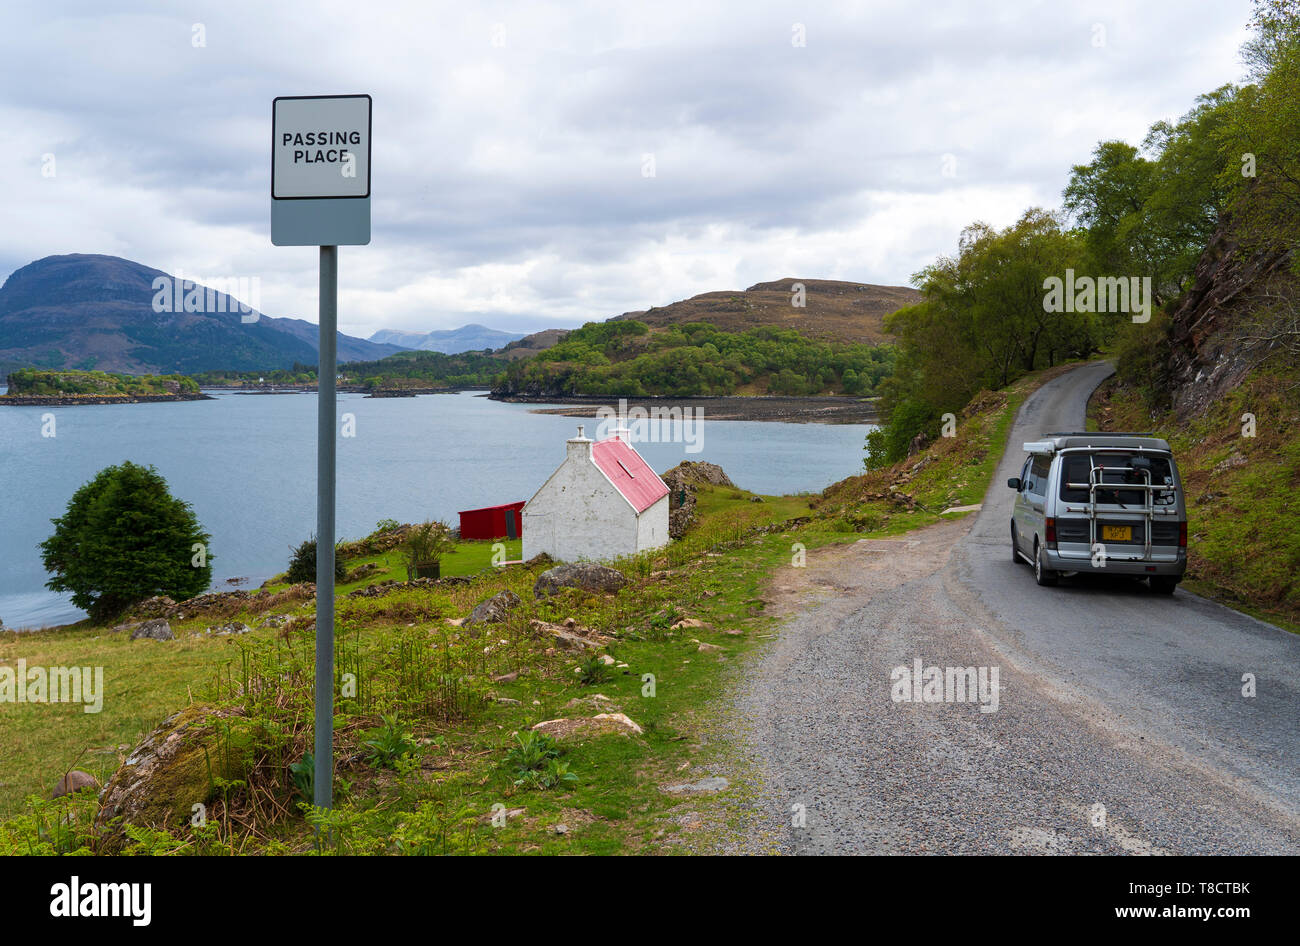 Unica via autostrada e passando luogo turistico e camper sulla costa nord 500 scenic il percorso in Torridon Scozia, Regno Unito Foto Stock